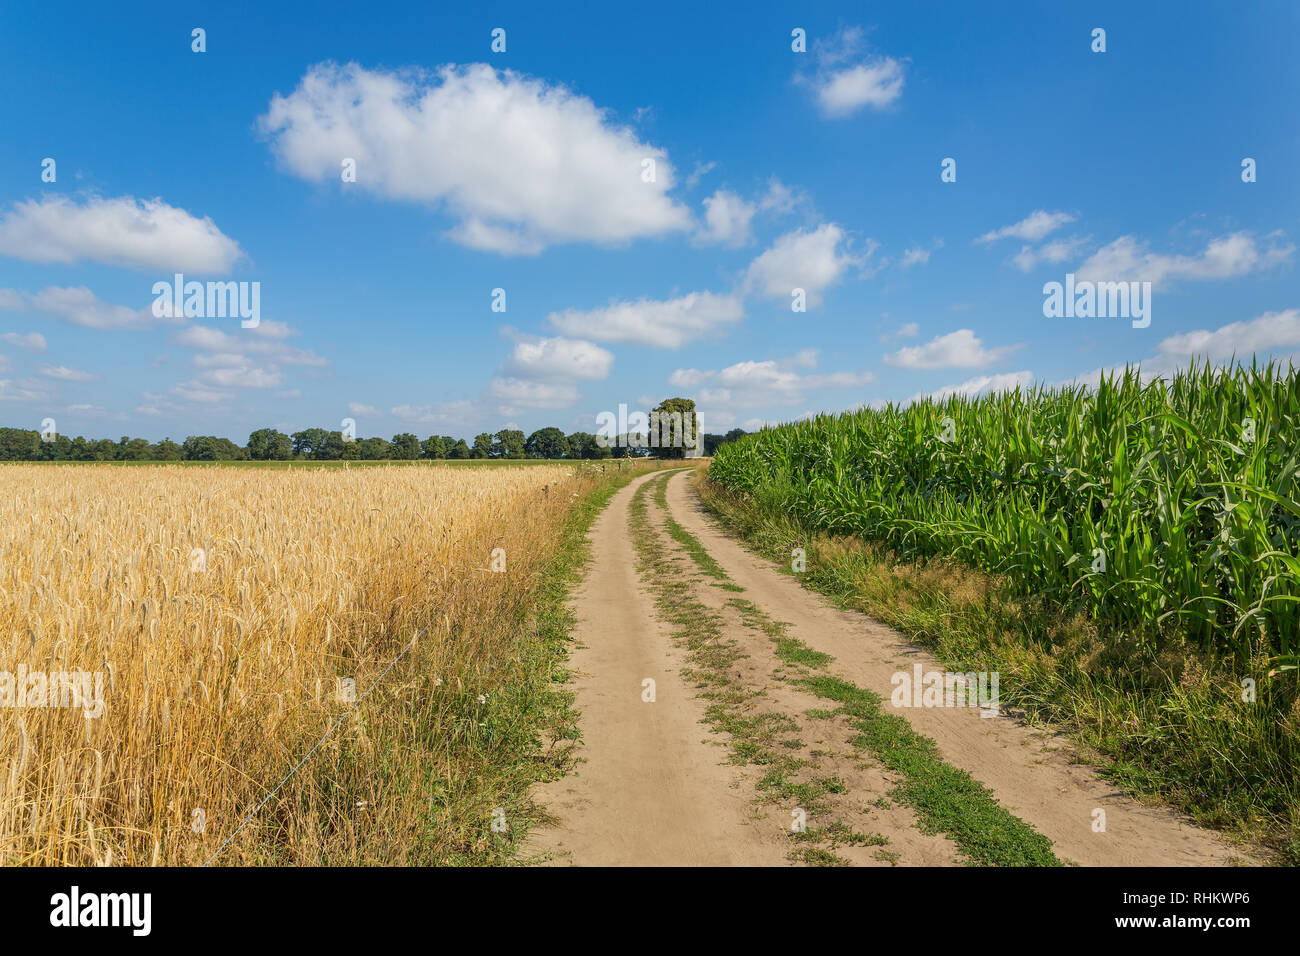 Ländliche Kulturlandschaft mit Sand Straße Maisfeld und Getreidepflanzen Stockfoto